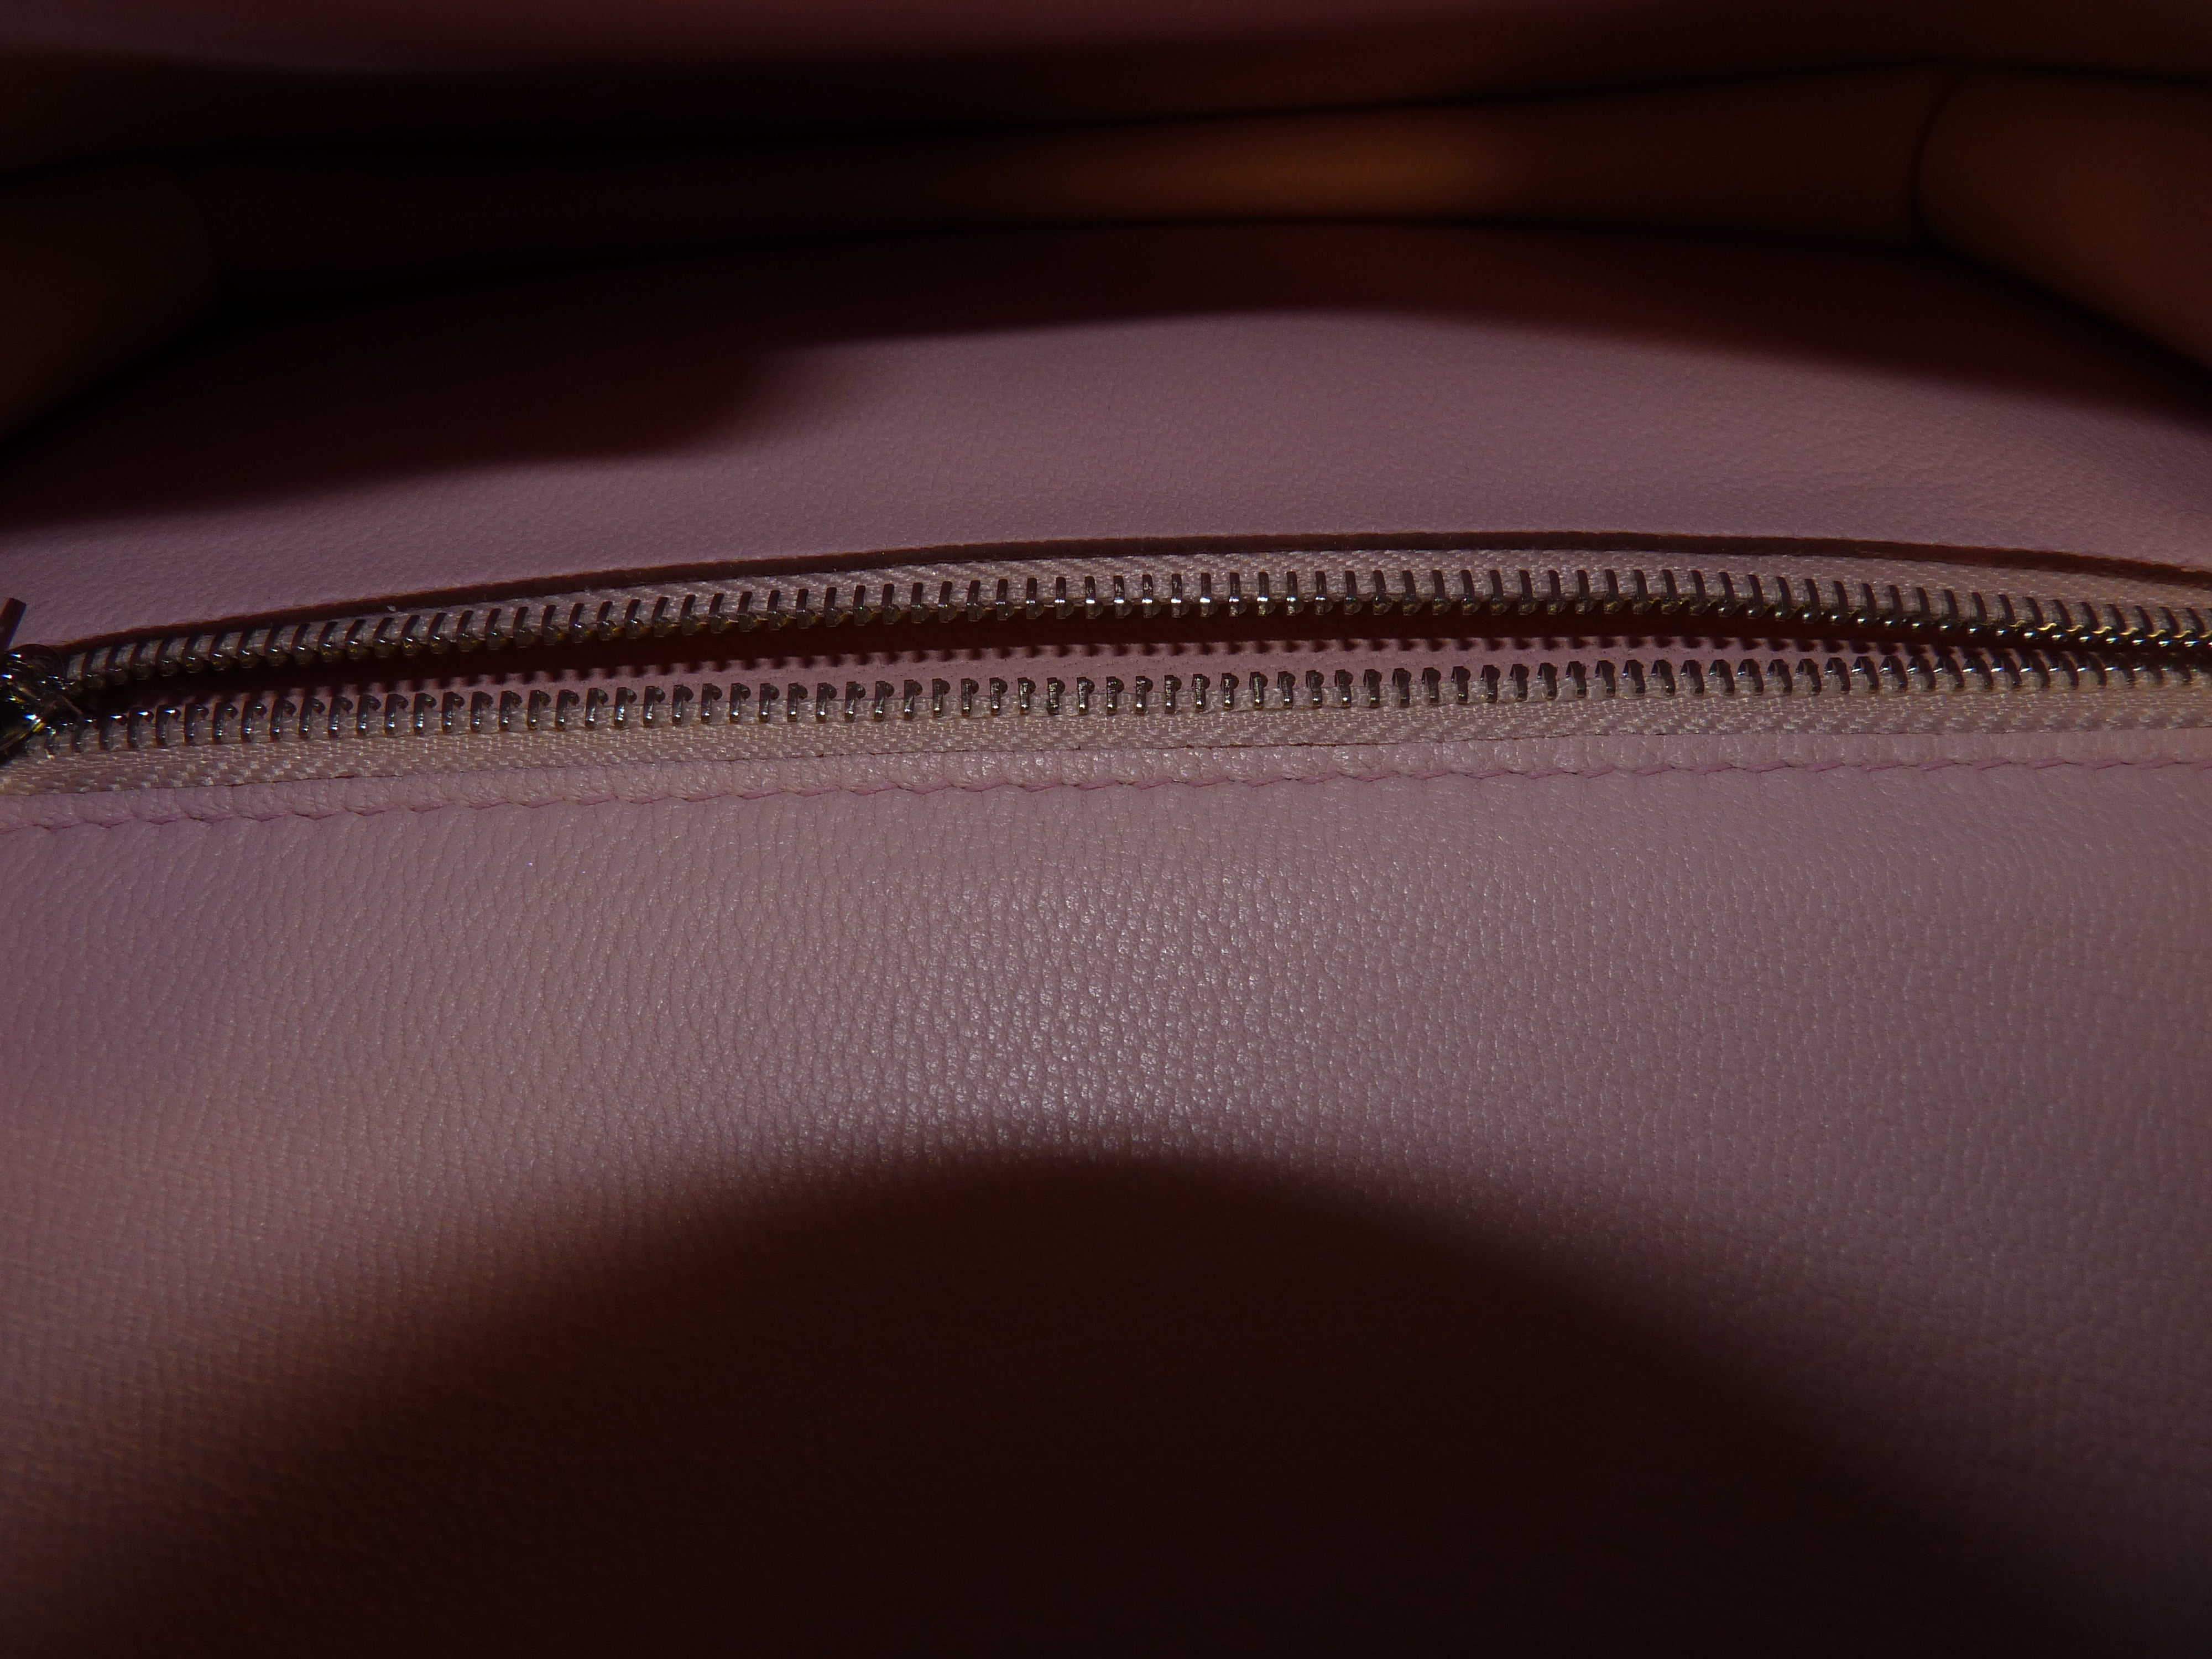 Boxed Hermes Pink Ladies Handbag - Image 10 of 14